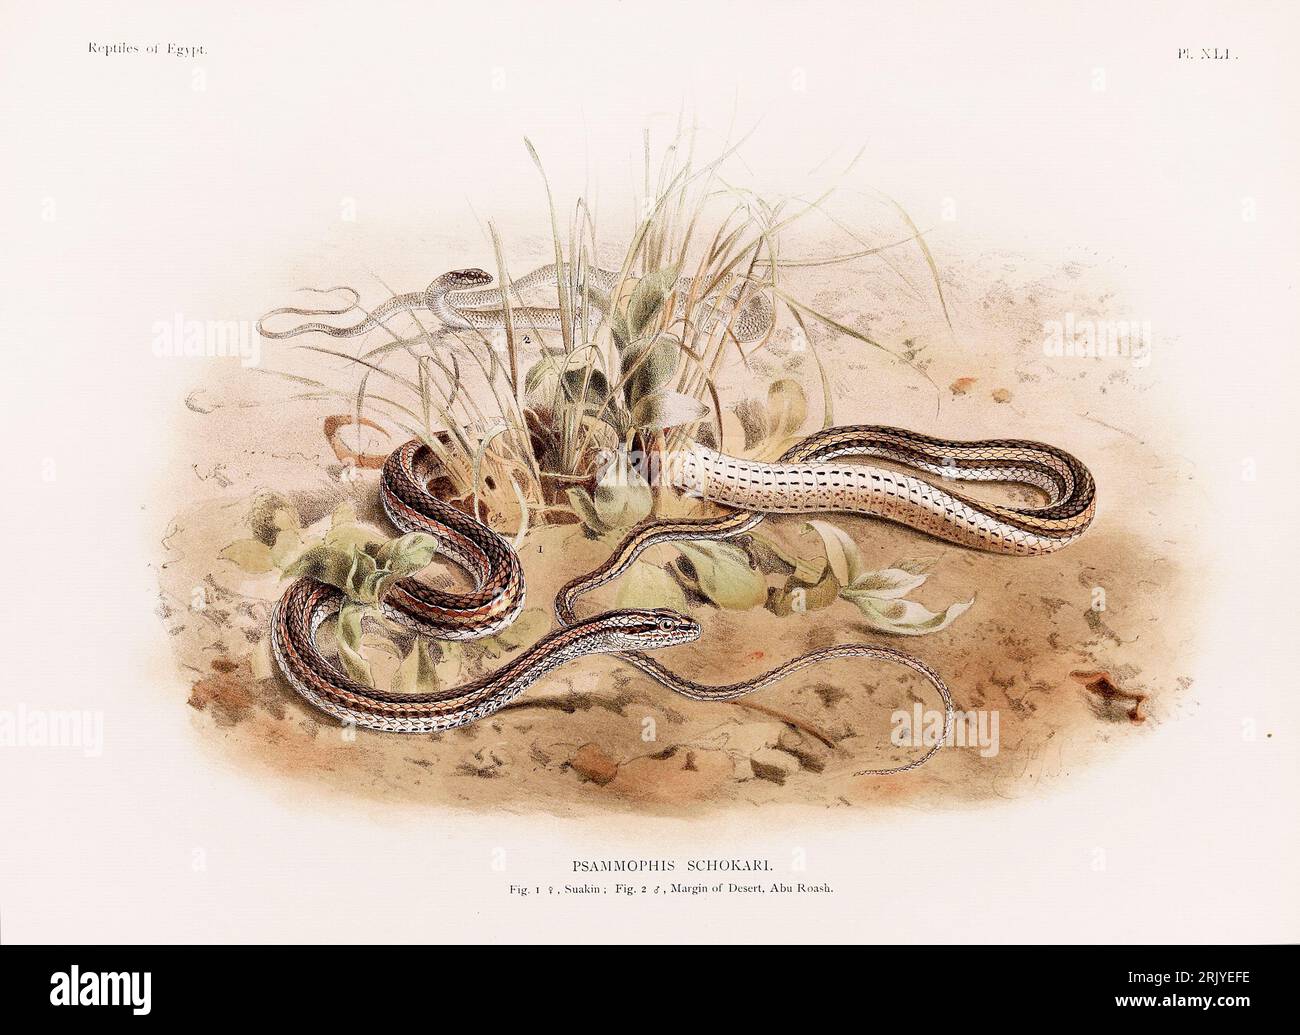 Wissenschaftliche Illustration aus einem Buch aus dem späten 19. Jahrhundert, das Reptilien zeigt und sich speziell mit der nordafrikanischen Zoologie beschäftigt. Stockfoto